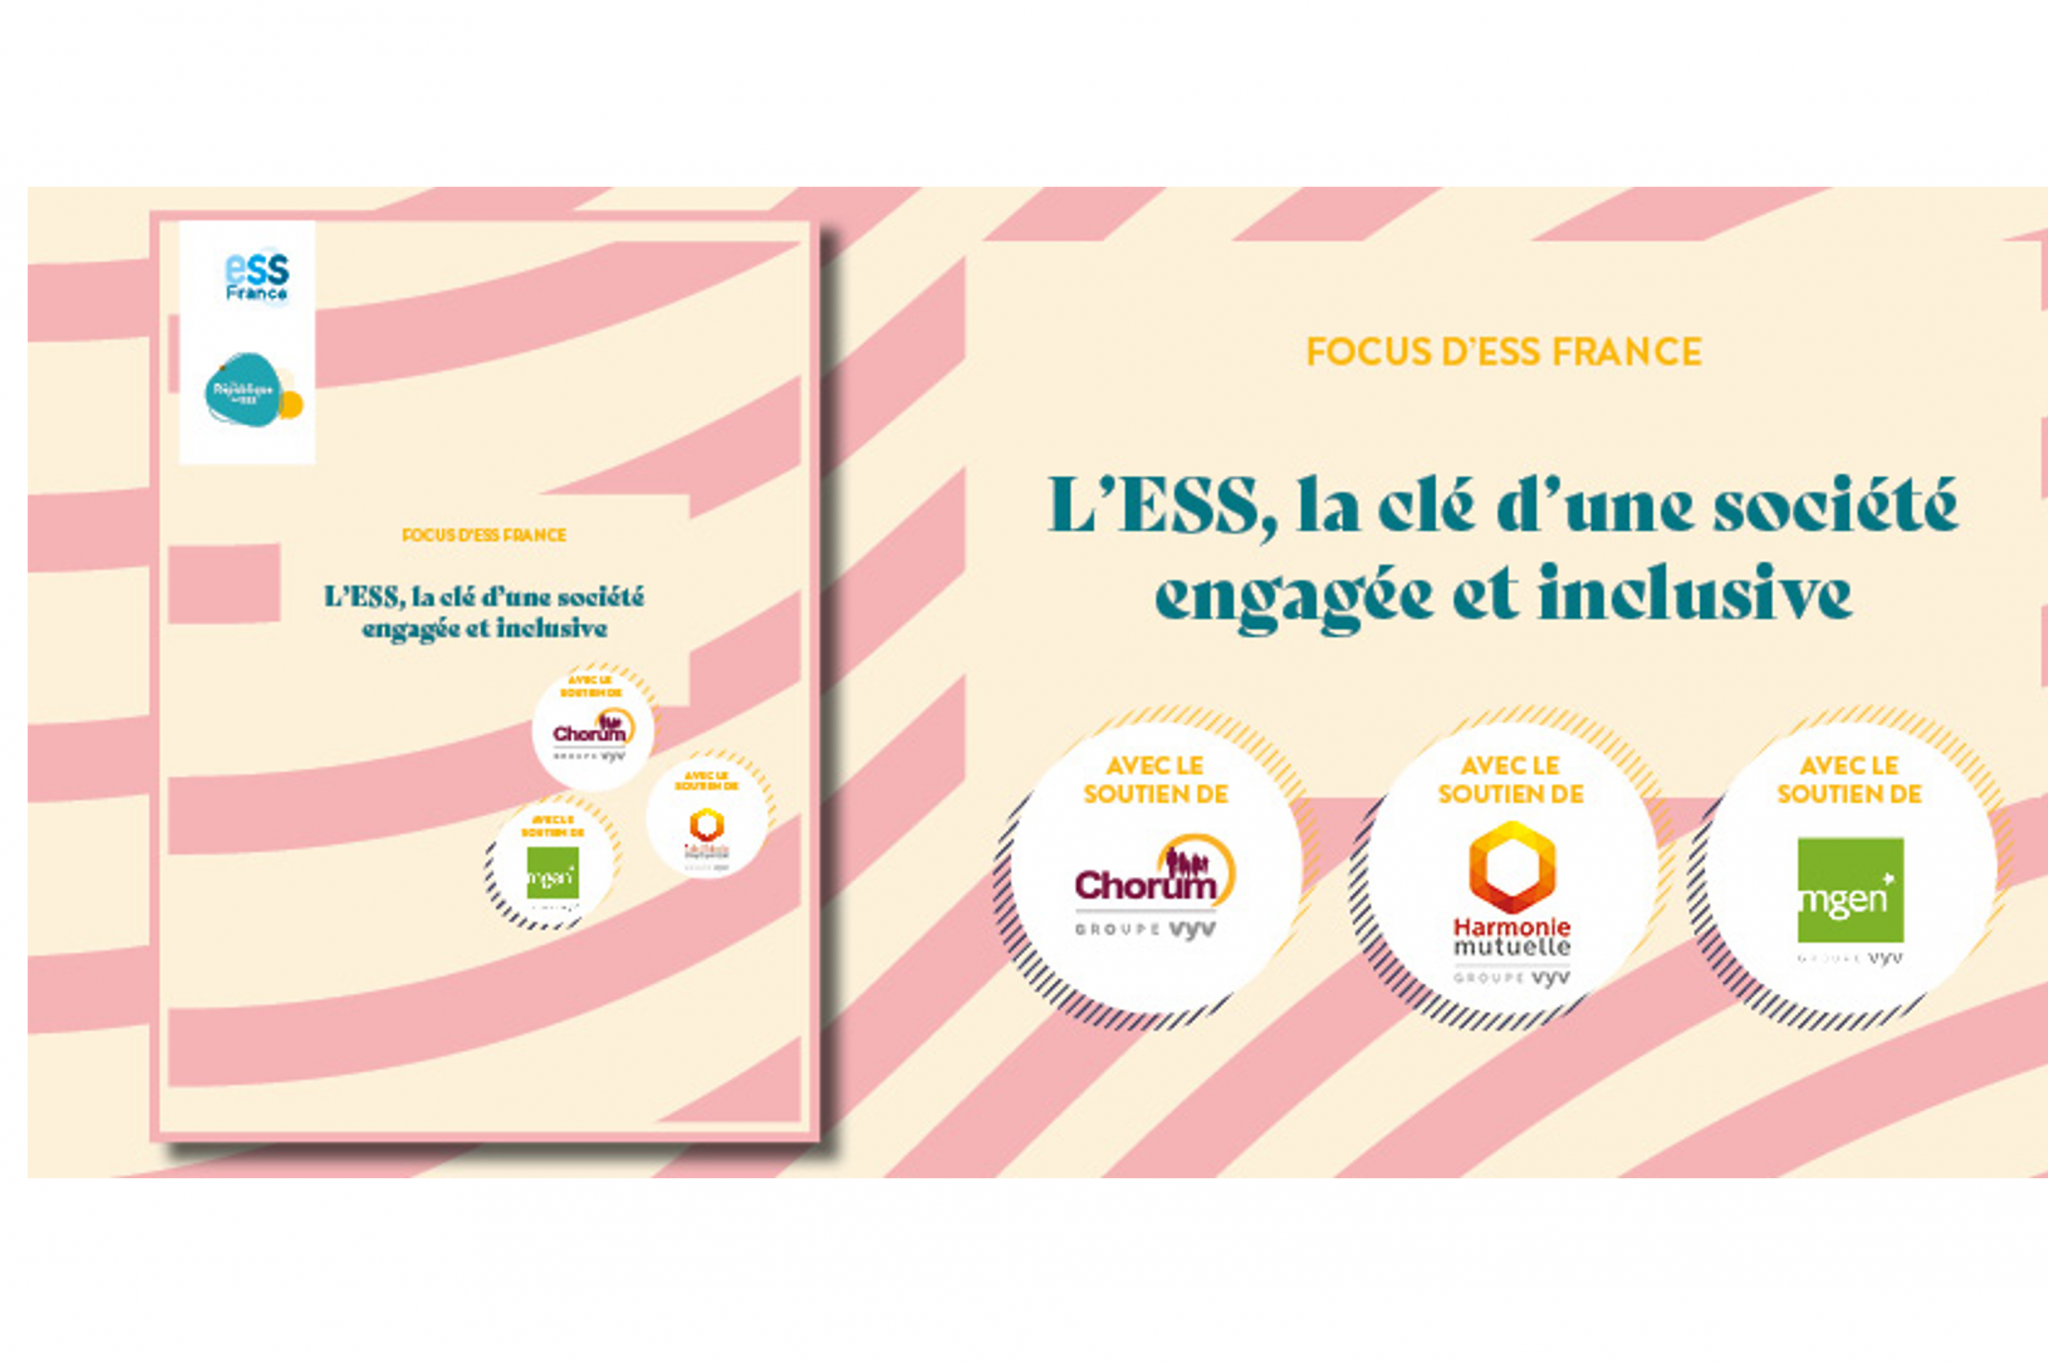 Focus d'ESS France : L’ESS, la clé d’une société engagée et inclusive